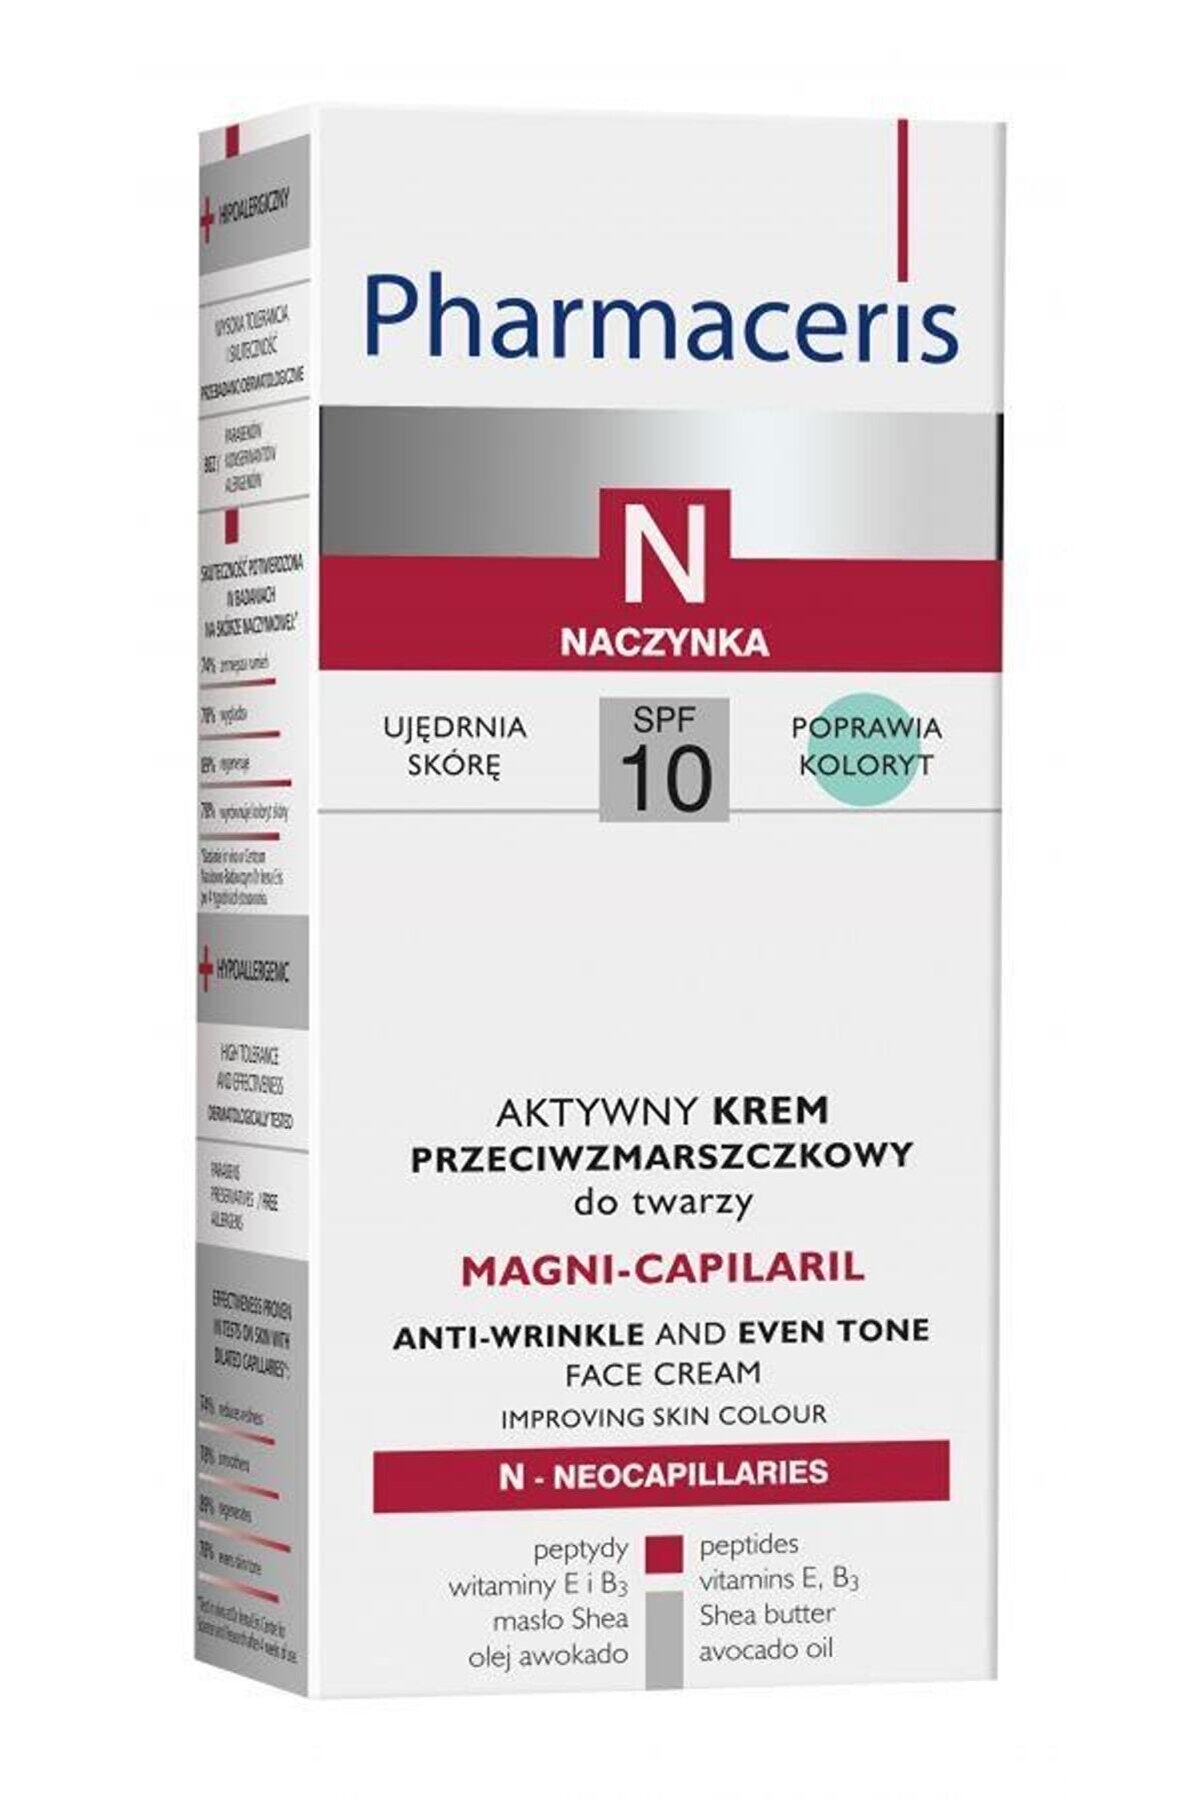 Pharmaceris N Magni-capilaril Face Cream Spf10 50 ml